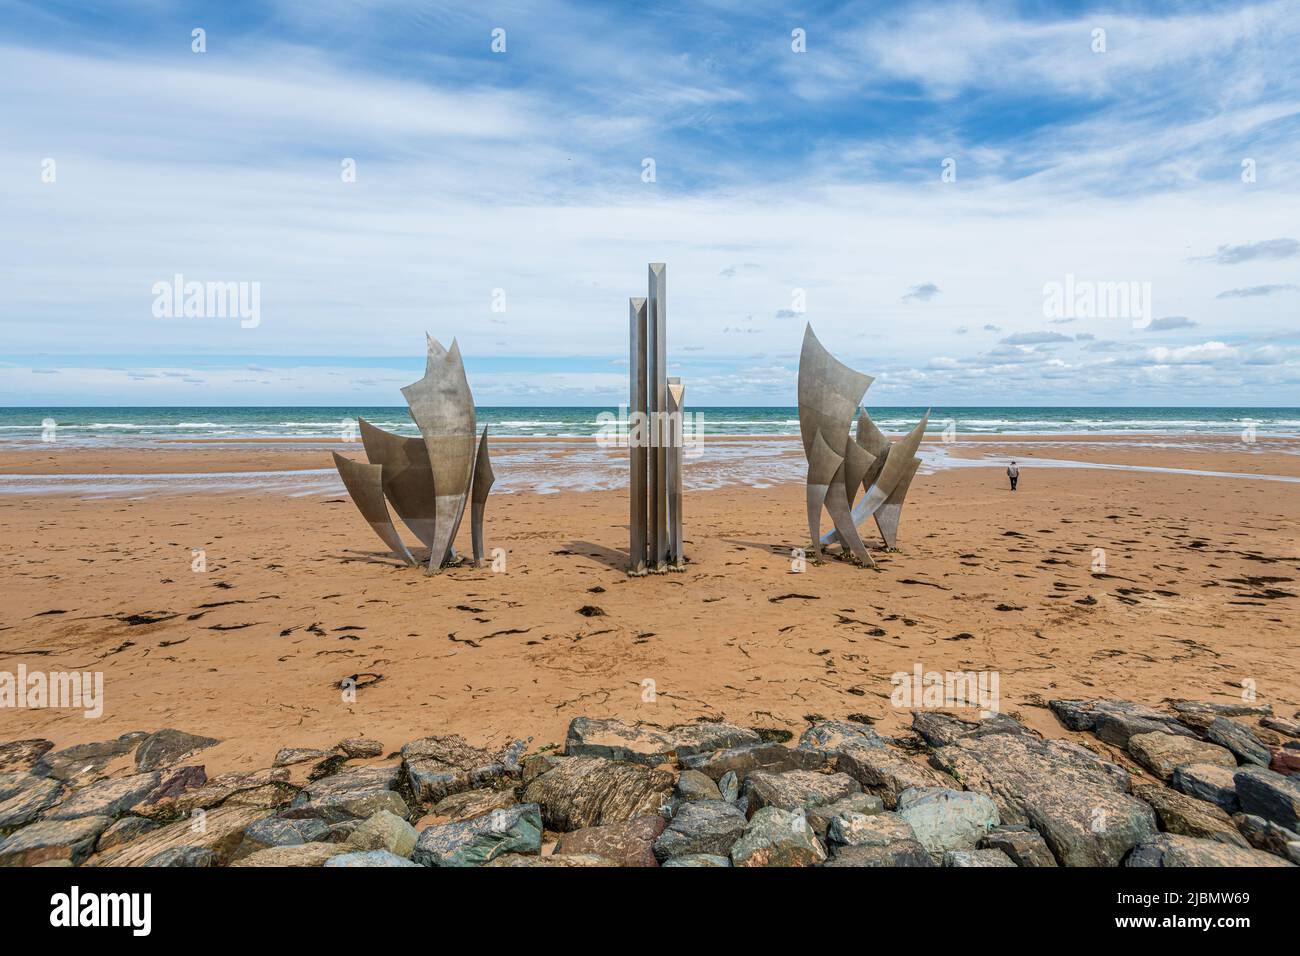 Monumento Les Braves de Saint-Laurent-sur-Mer. Erigé sur le Sable de la plage d’Omaha Beach, en hommage aux 35,000 soldats alliés qui débarquèrent en c Foto Stock